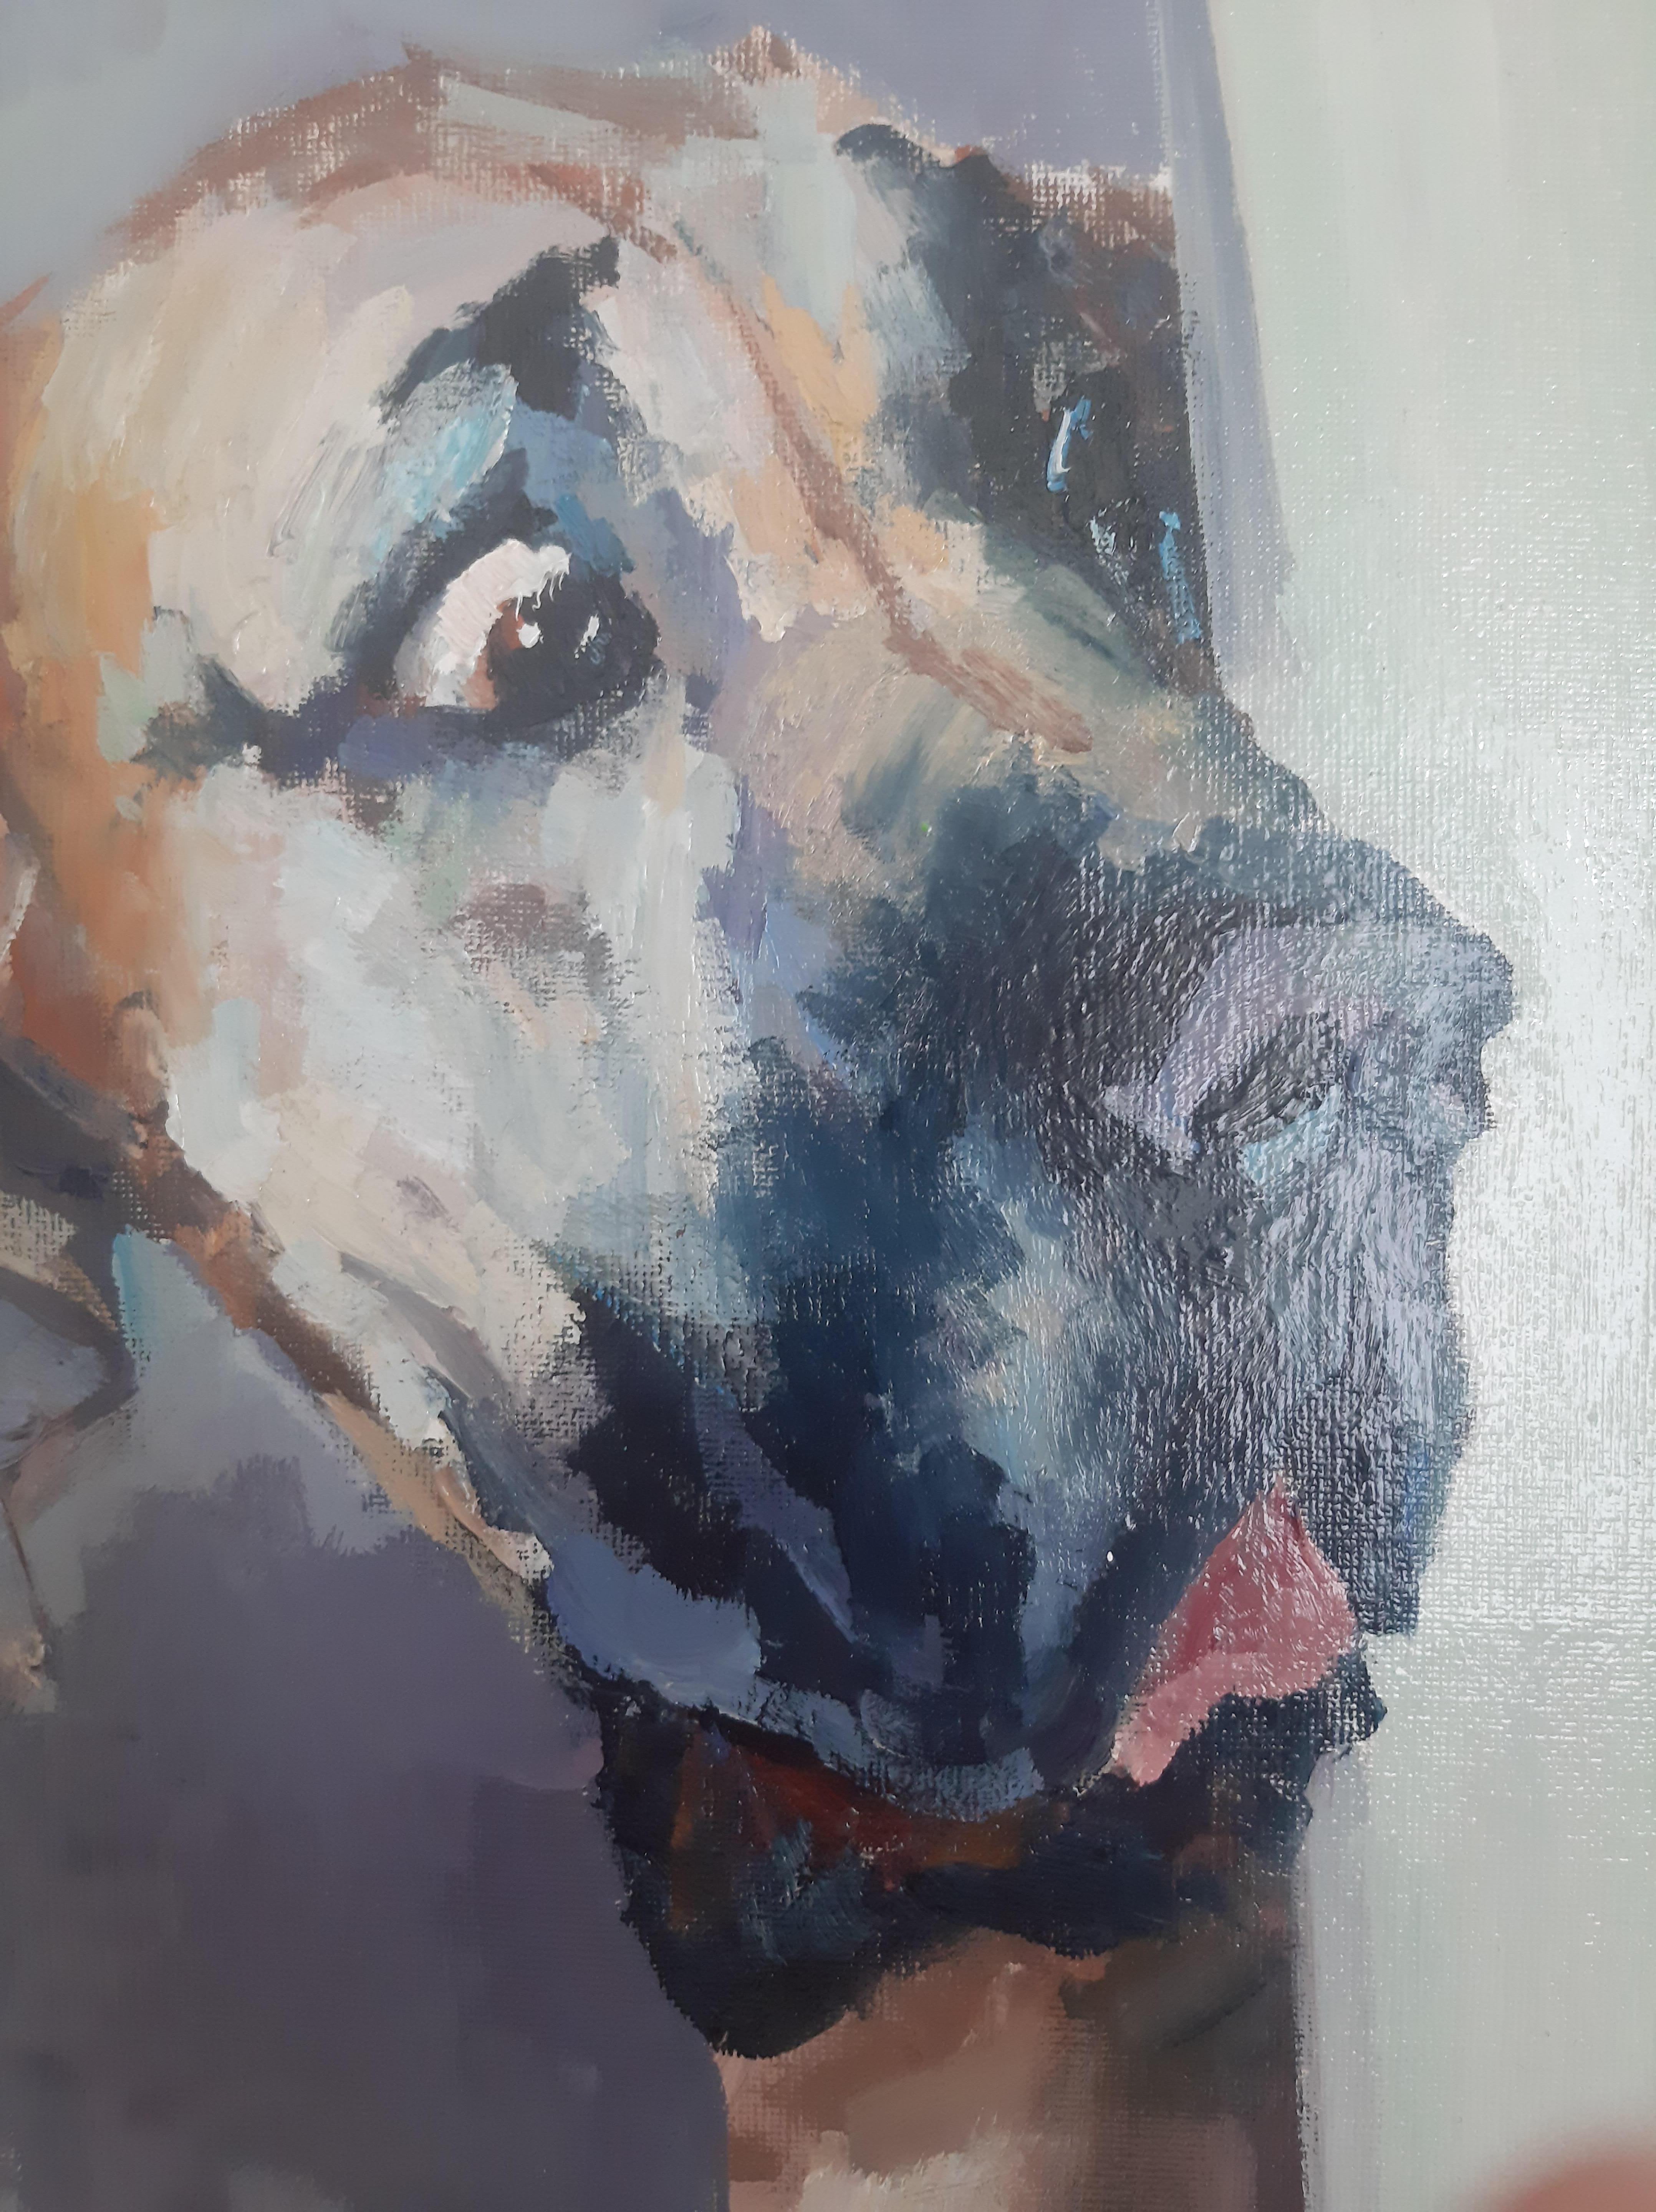 In diesem Gemälde mit dem Porträt eines Hundes sehen wir einen konzentrierten Blick, der von lebhaften Emotionen zu atmen scheint. Das Gesicht des Tieres drückt echtes Erstaunen und Verwirrung aus. Der Blick ist von tiefem Interesse erfüllt, als ob